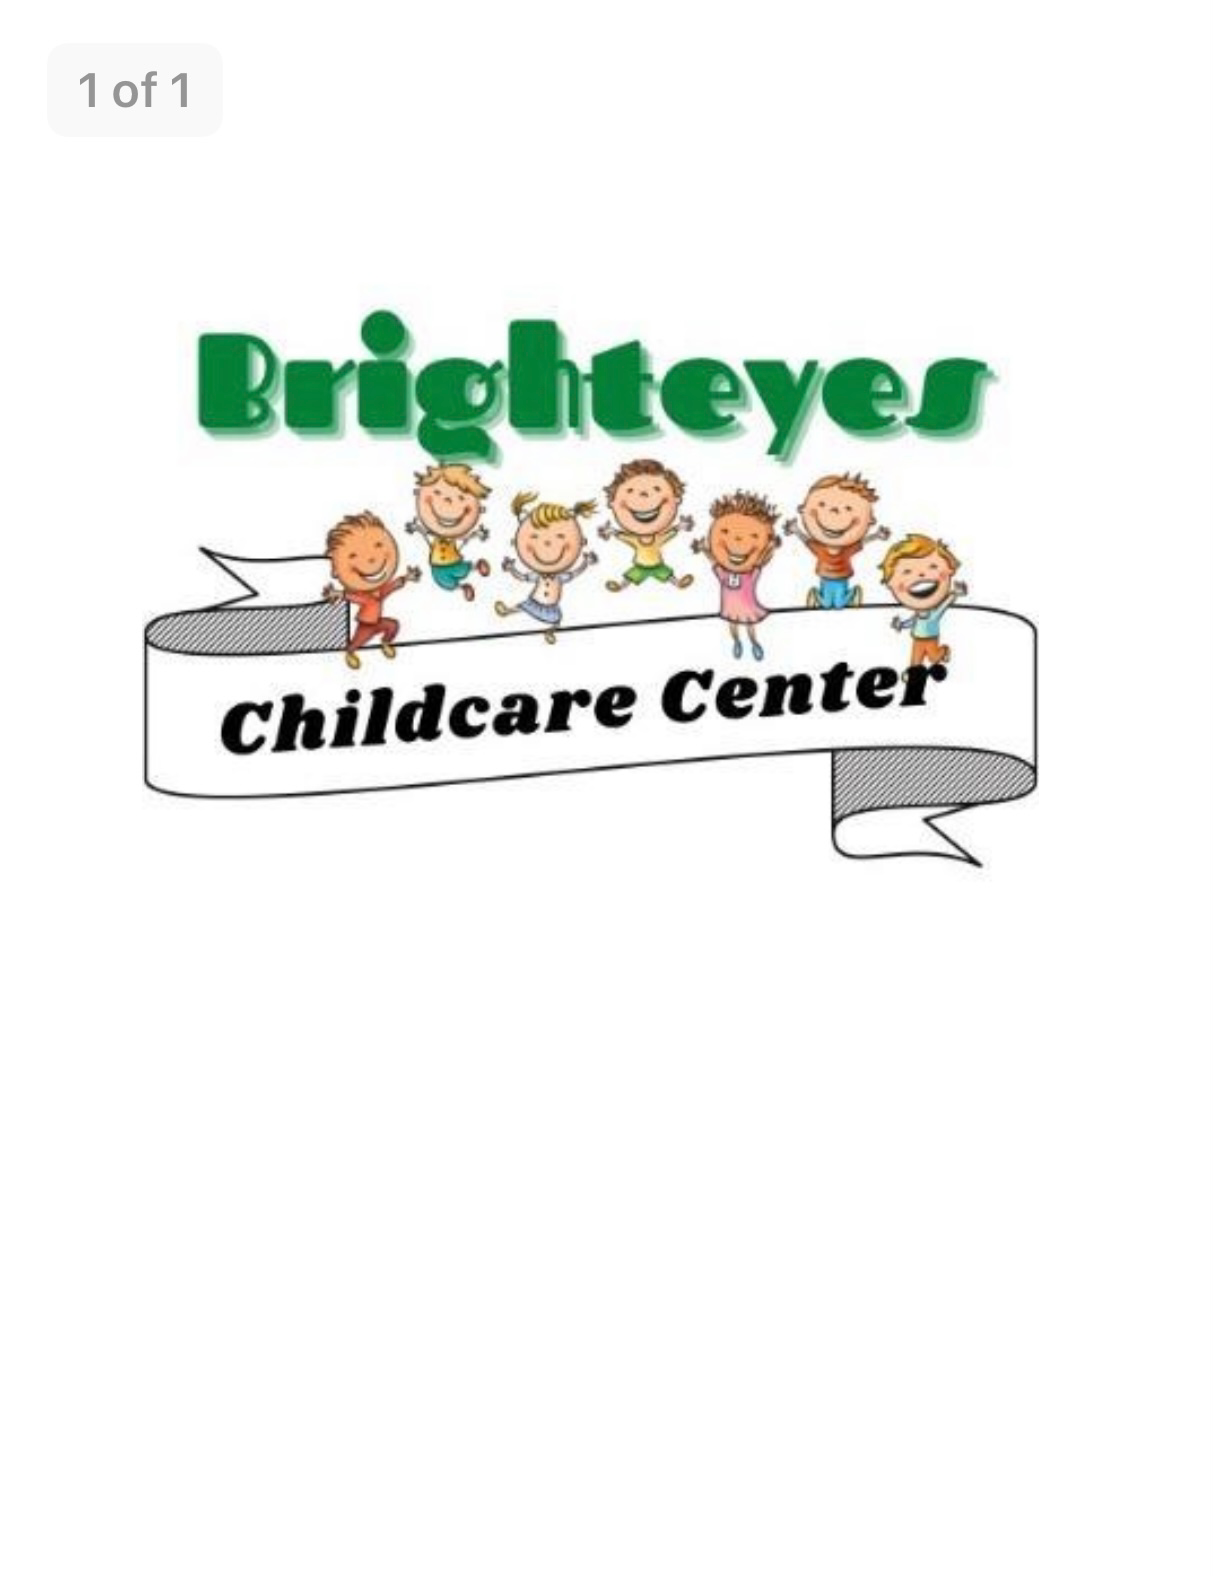 Brighteyes Childcare Center logo